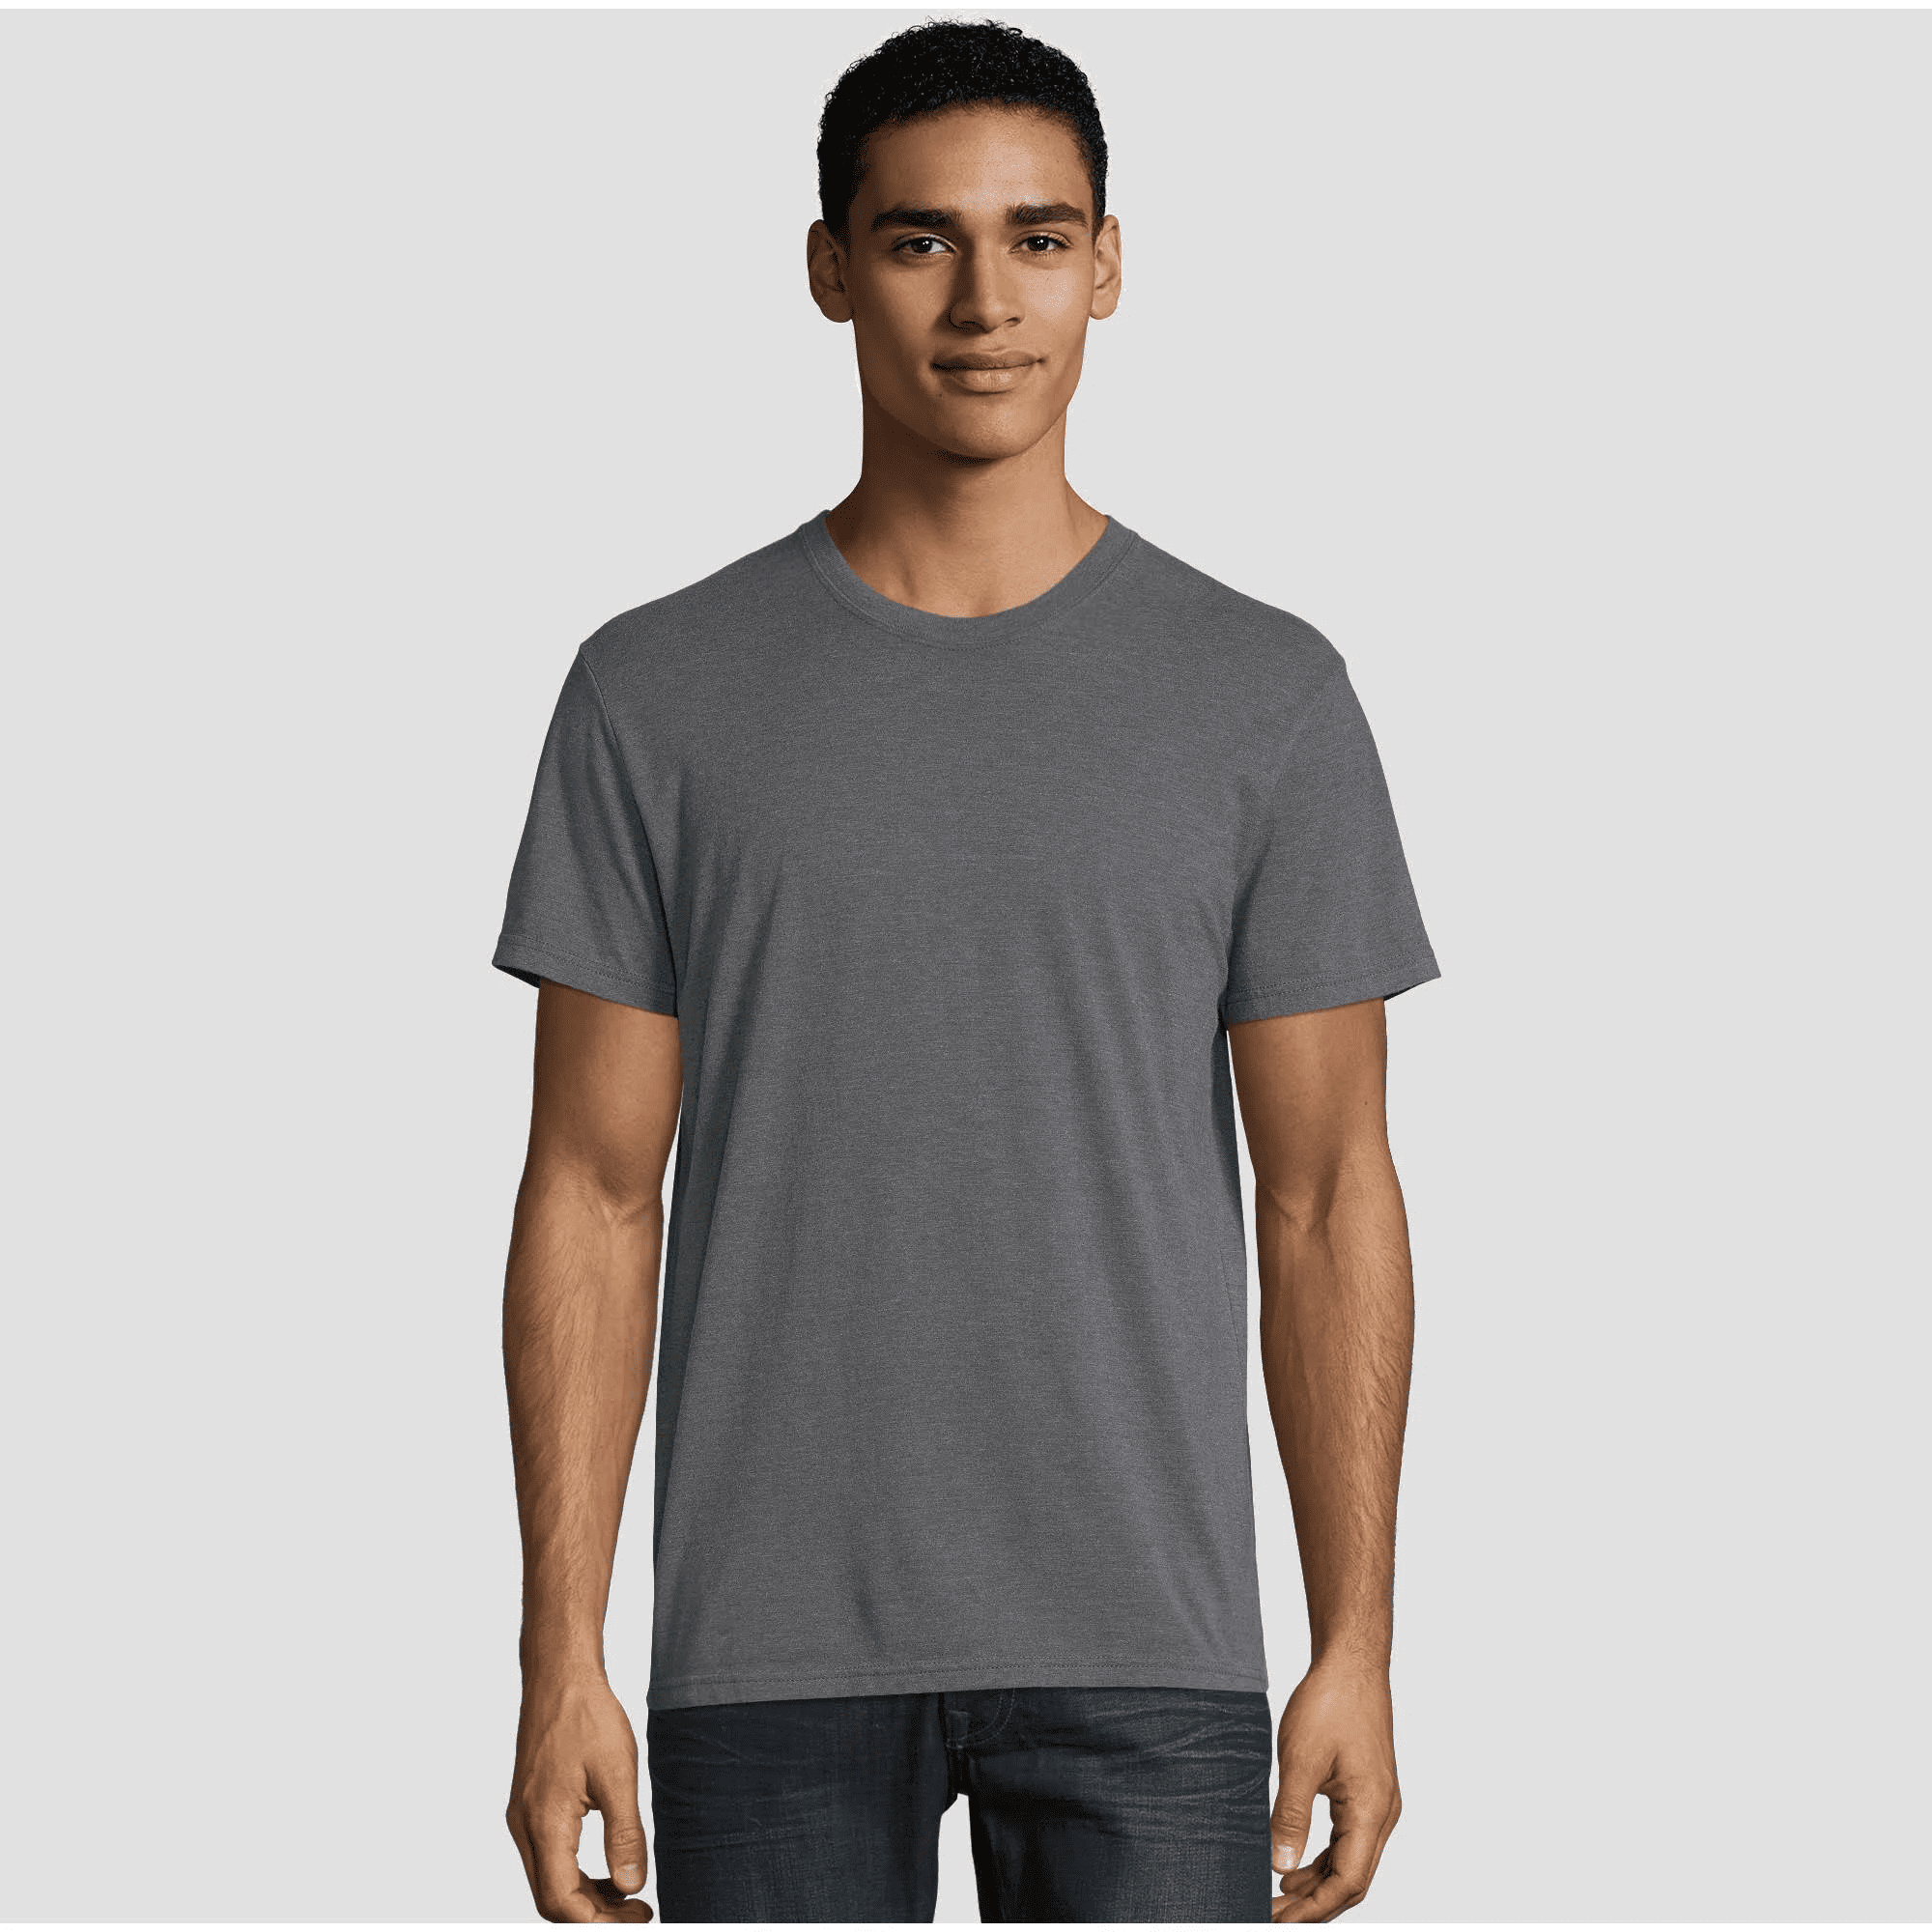 Hanes Premium Men's Short Sleeve Black Crew T-Shirt - Charcoal - Walmart.com